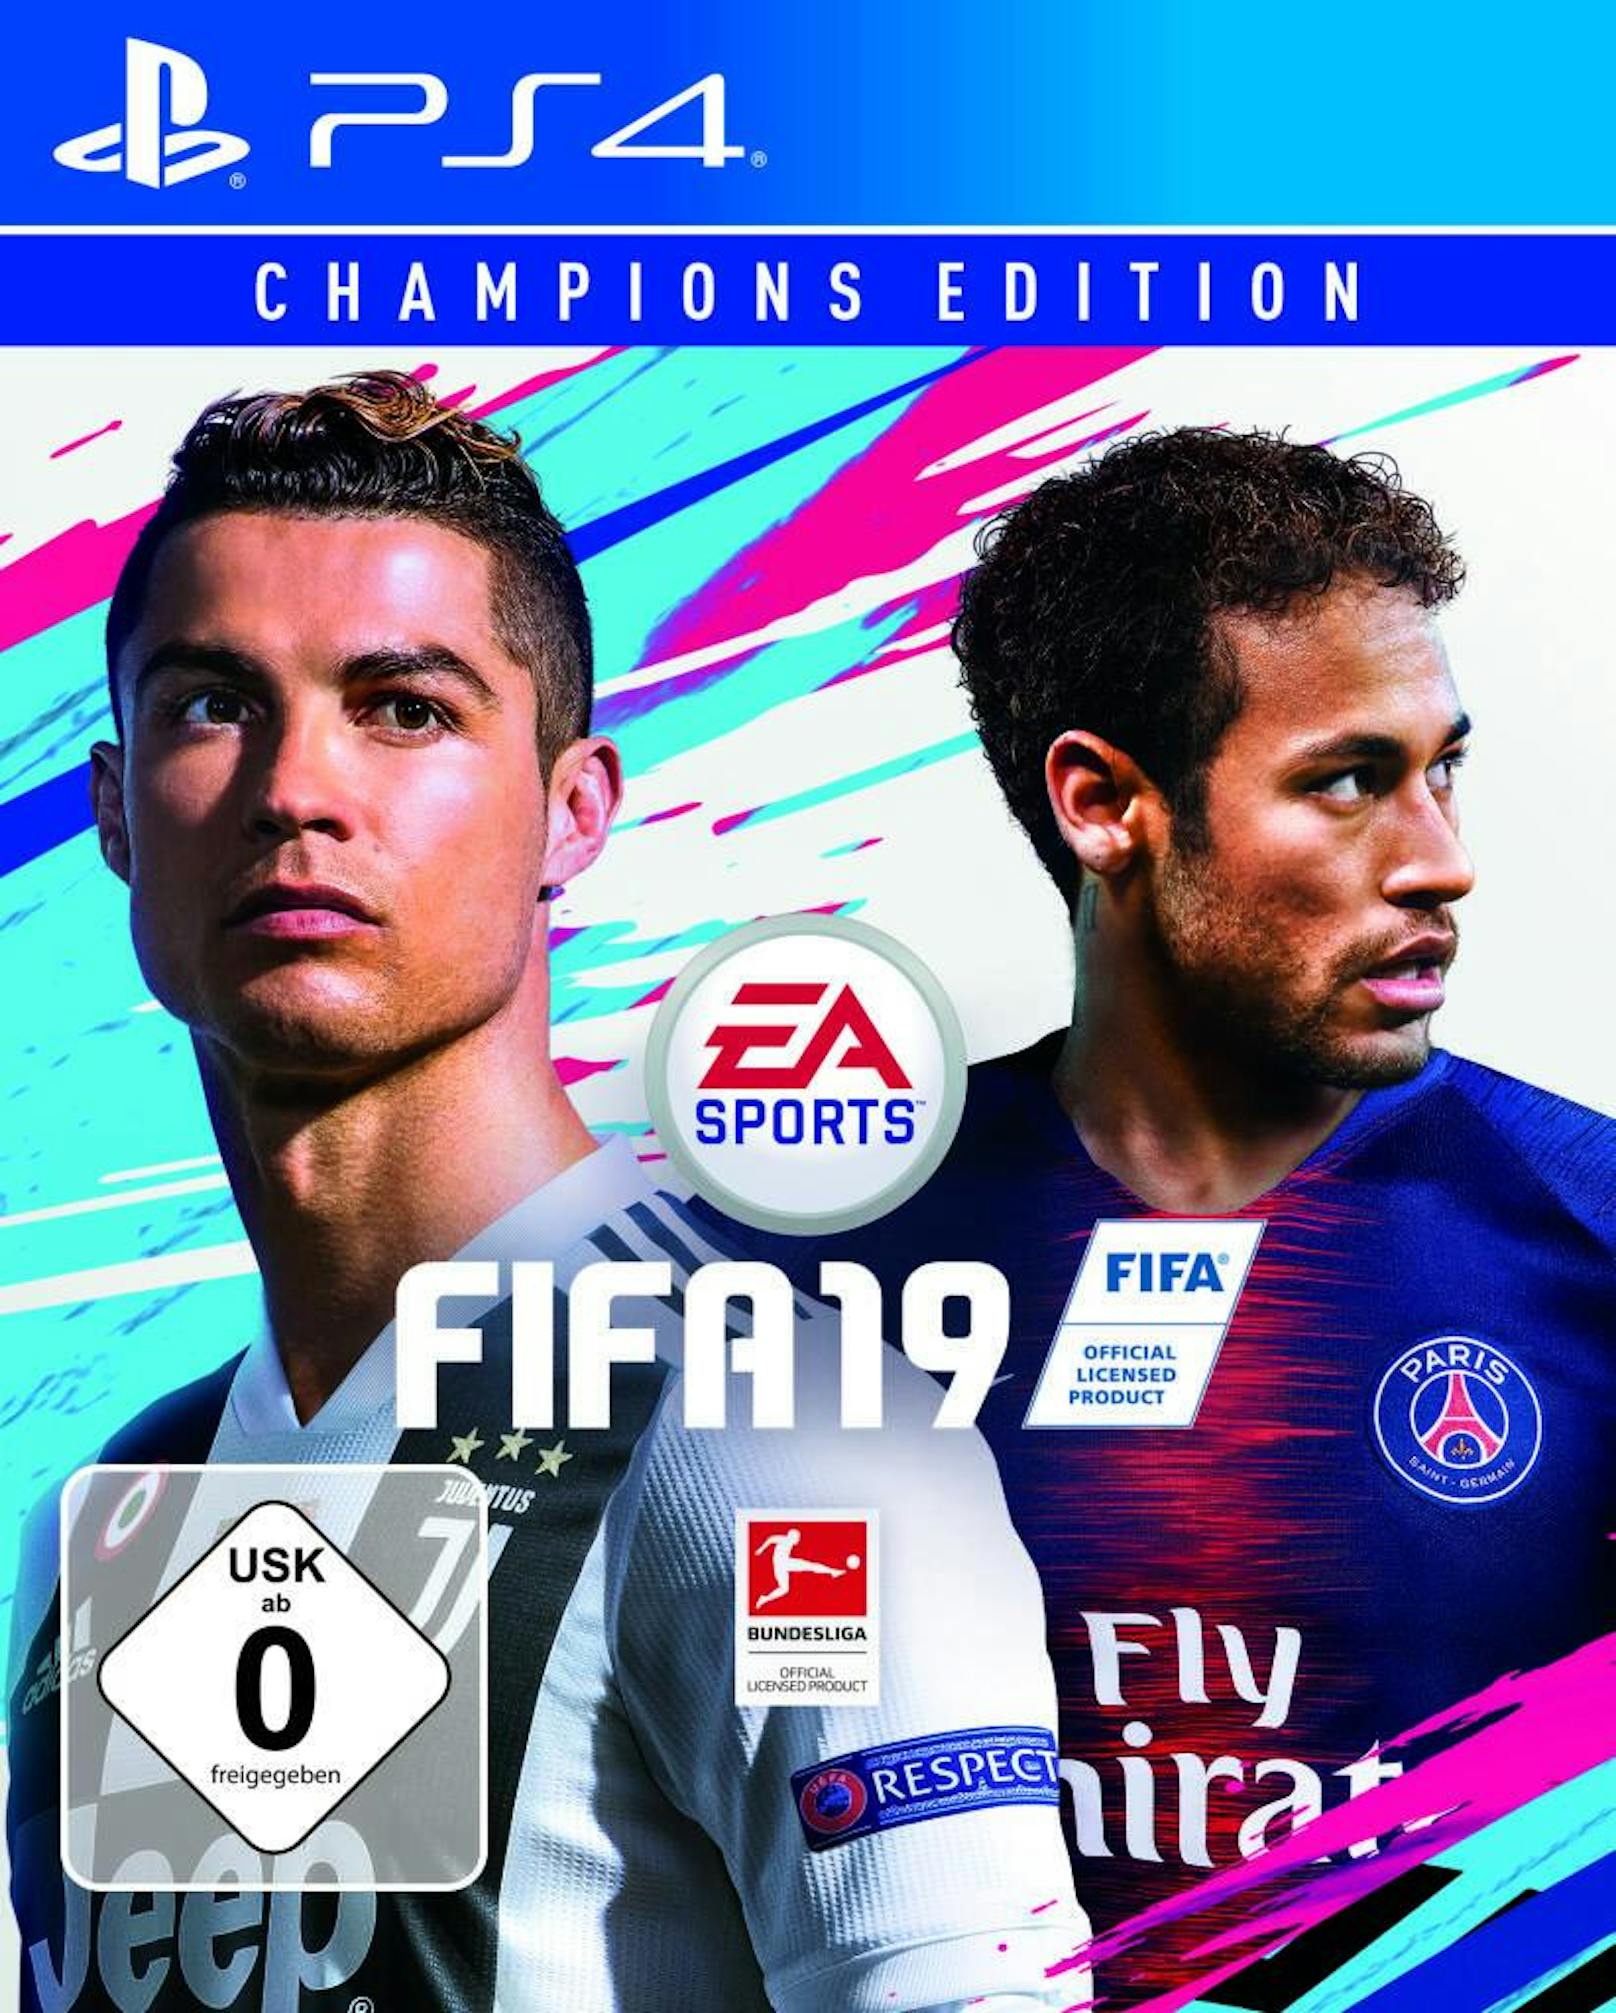 Alles in allem verteidigt FIFA 19 wieder den Titel bei den Fußball-Simulationen. Obwohl Pro Evolution Soccer wieder gut vorgelegt hat, hat EA Sports die Japaner von Konami abermals übertroffen. Realismus und Spielspaß halten sich die Waage und machen FIFA 19 zu einem Pflichtkauf für jeden virtuellen Kicker.